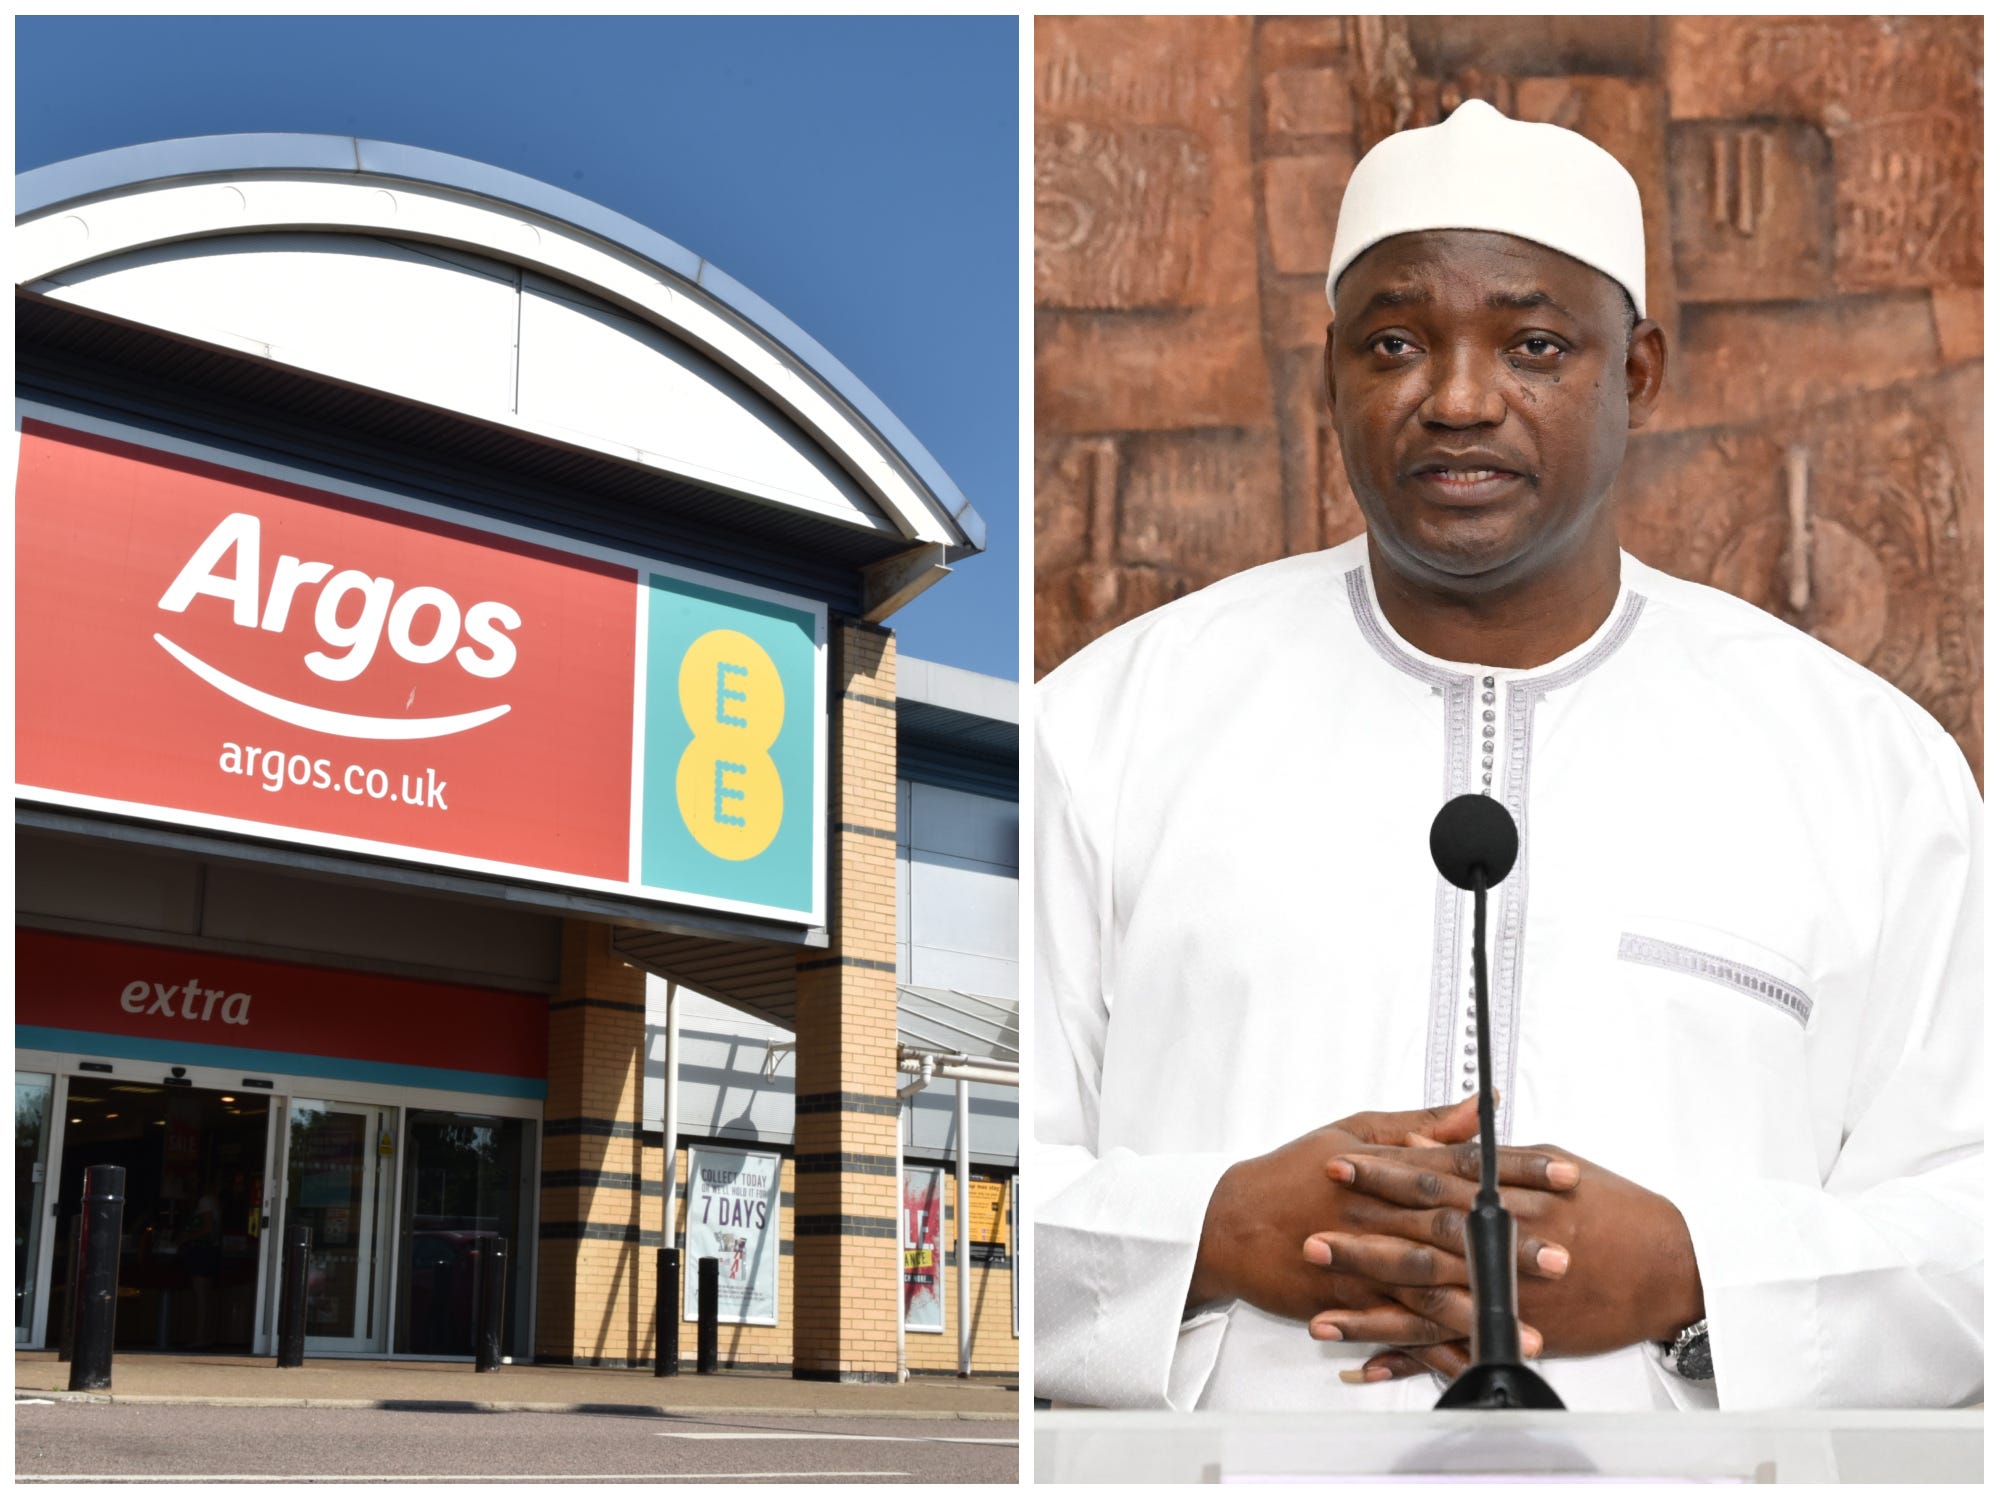 Afbeeldingen van de voorkant van een Argos-winkel in het Verenigd Koninkrijk en president Adama Barrow naast elkaar.